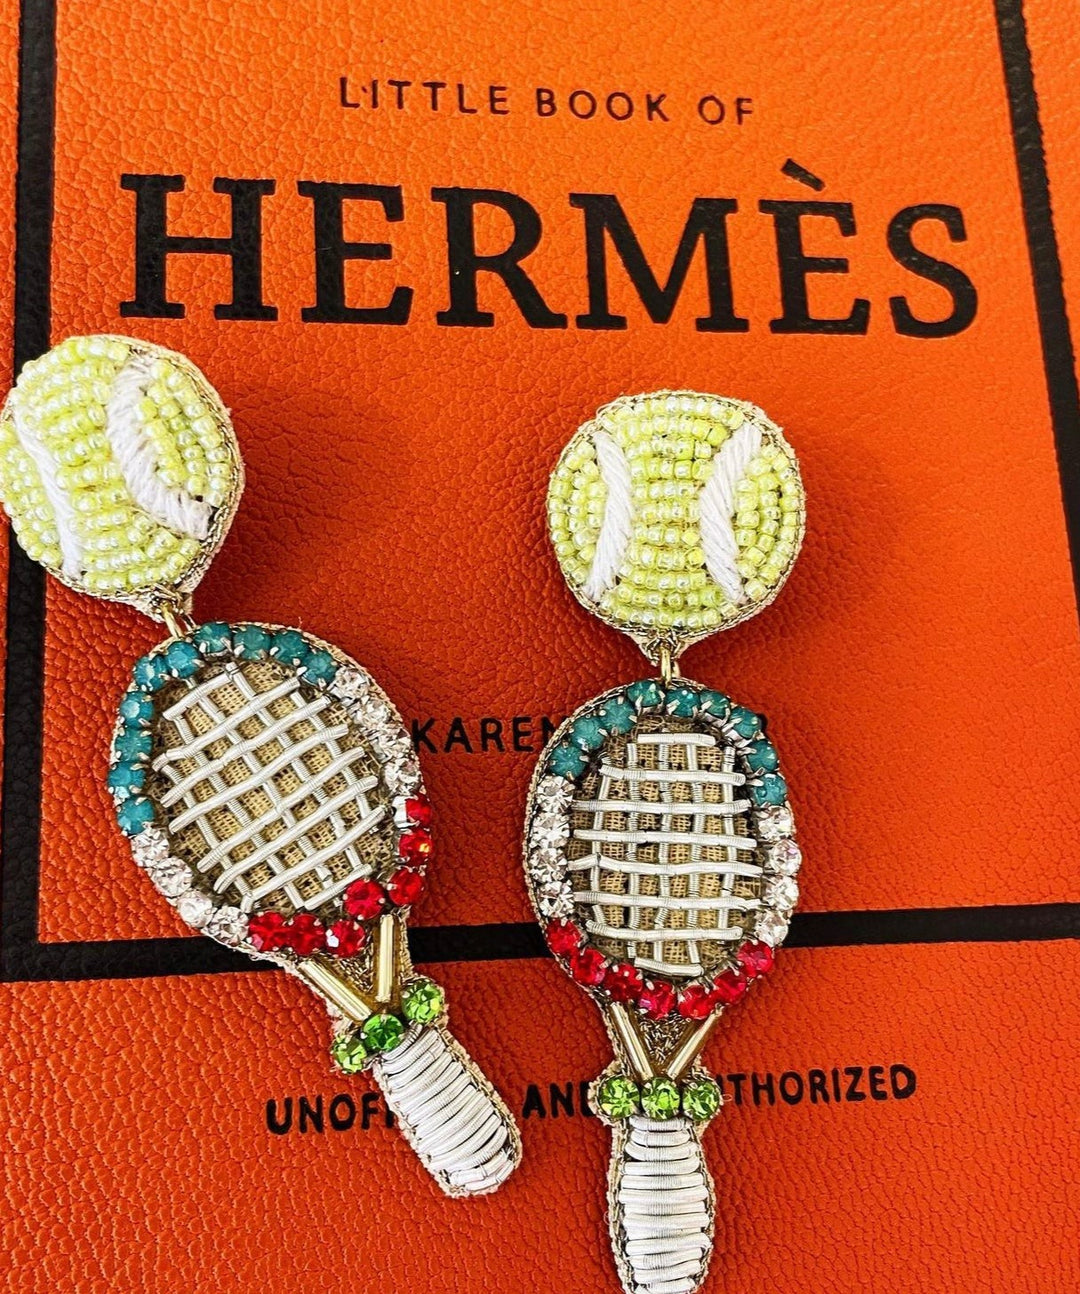 Tennis Racket Earrings